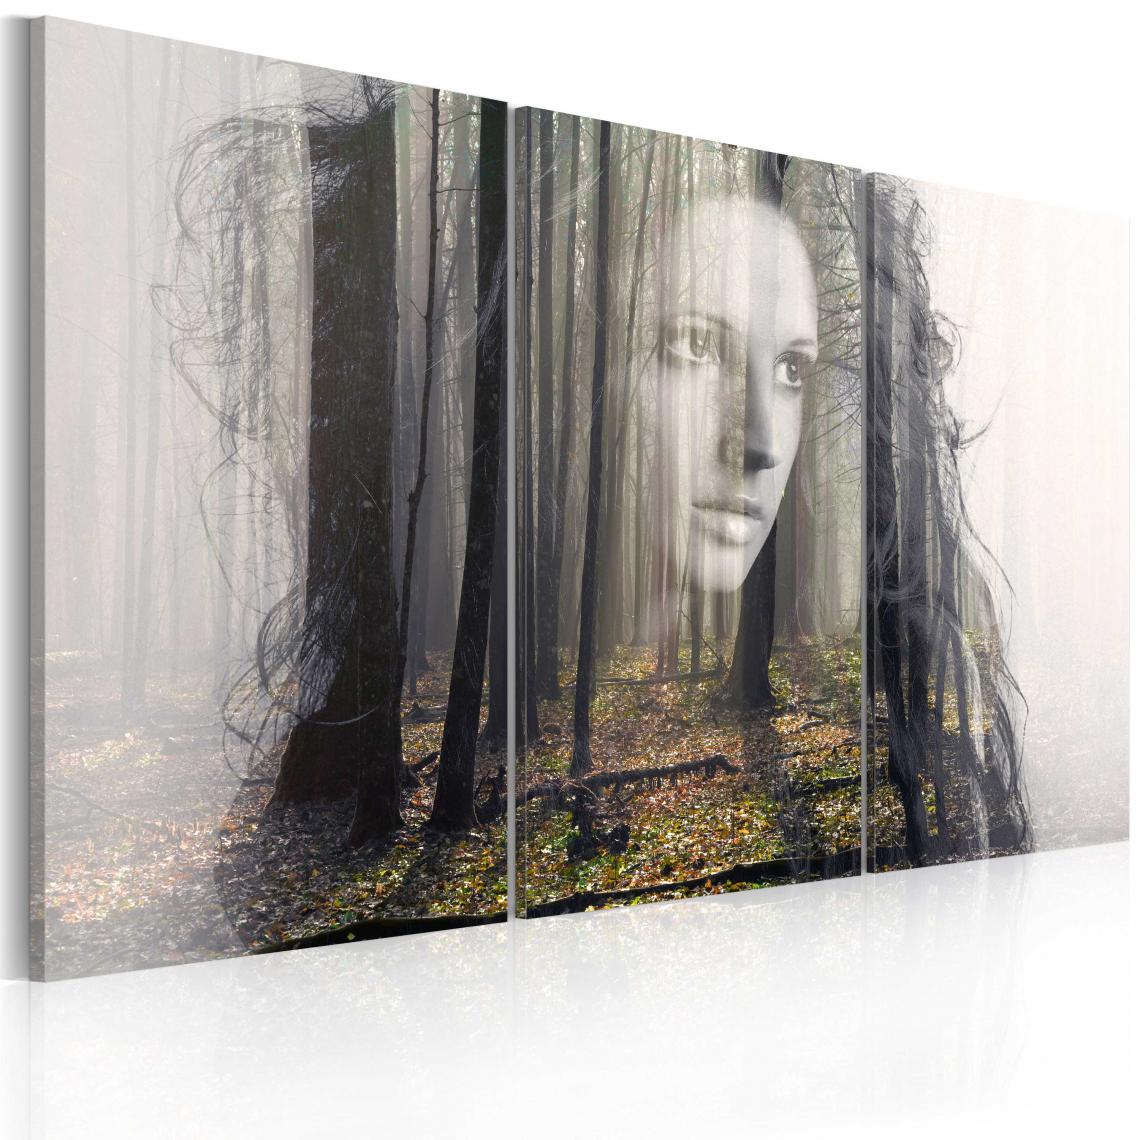 Decoshop26 - Tableau sur toile en 3 panneaux décoration murale image imprimée cadre en bois à suspendre Nymphe de la forêt 120x80 cm 11_0007374 - Tableaux, peintures